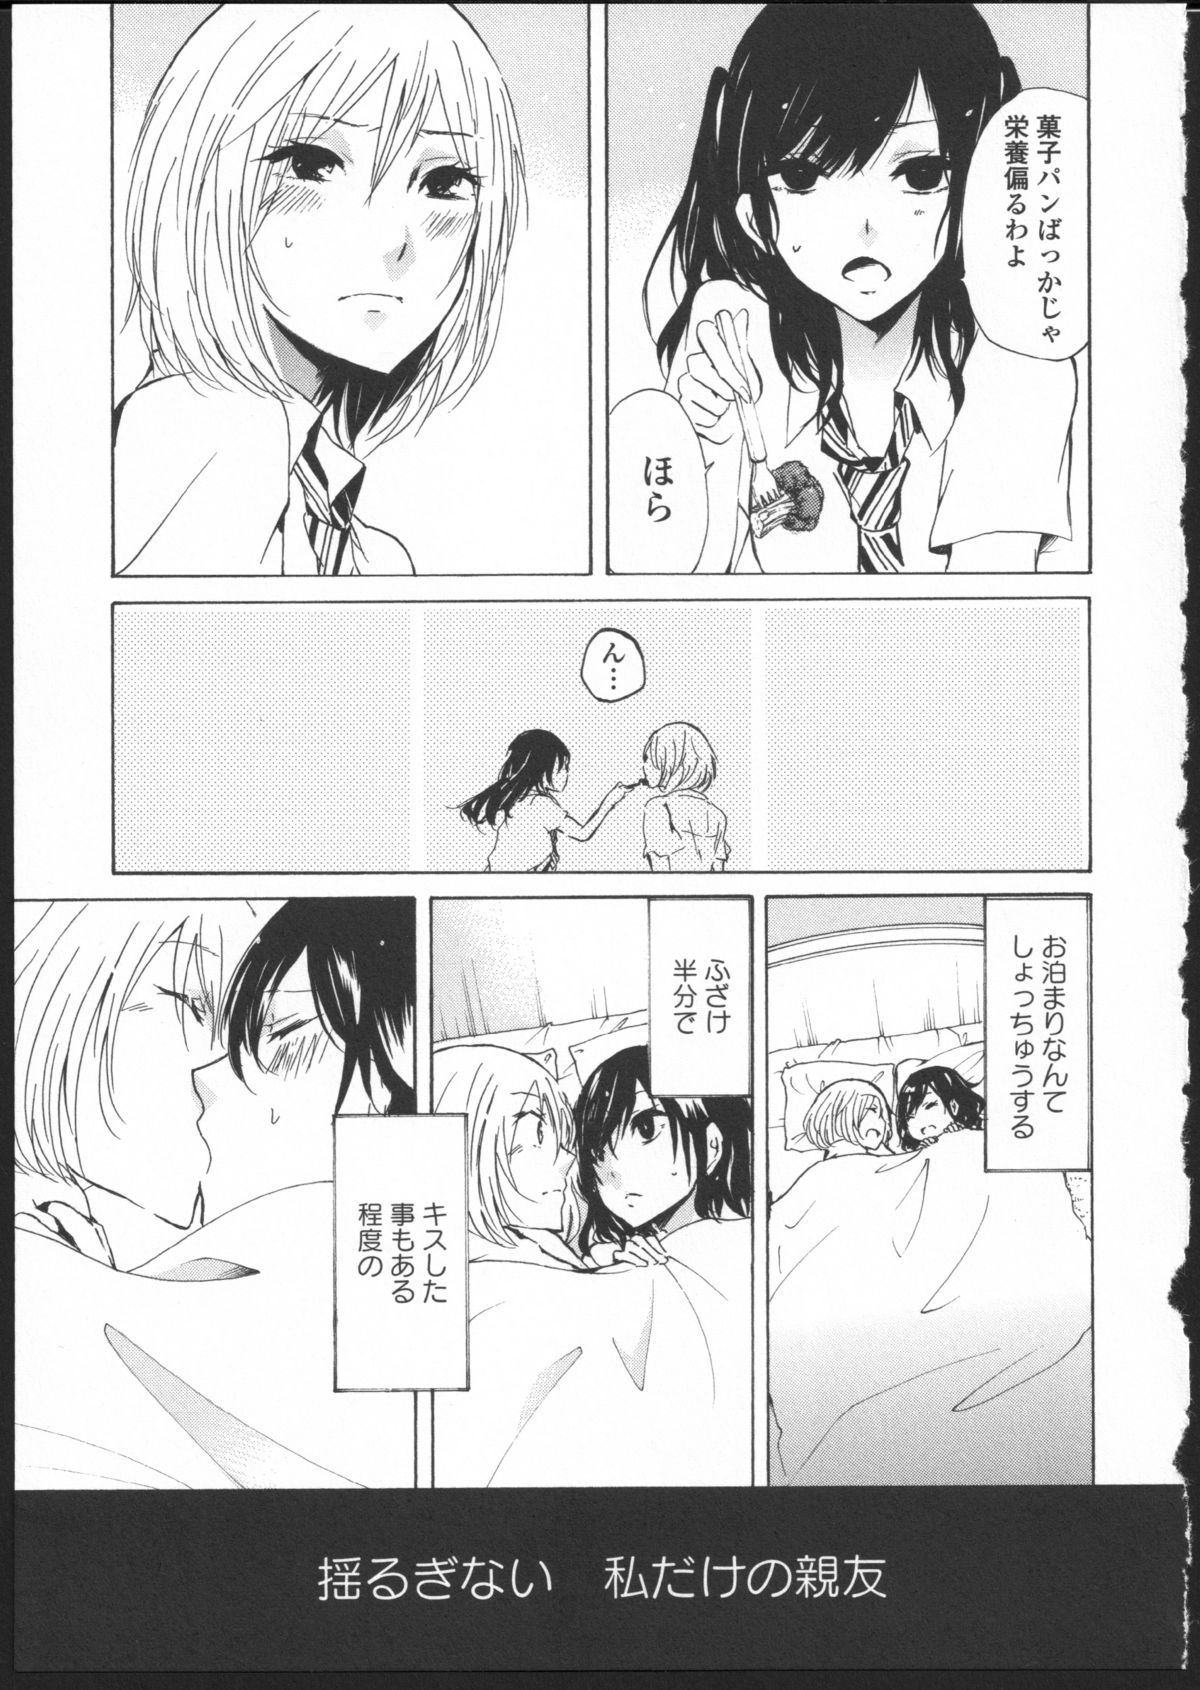 [Kuzushiro] Kimi no Sei Zenpen page 3 full